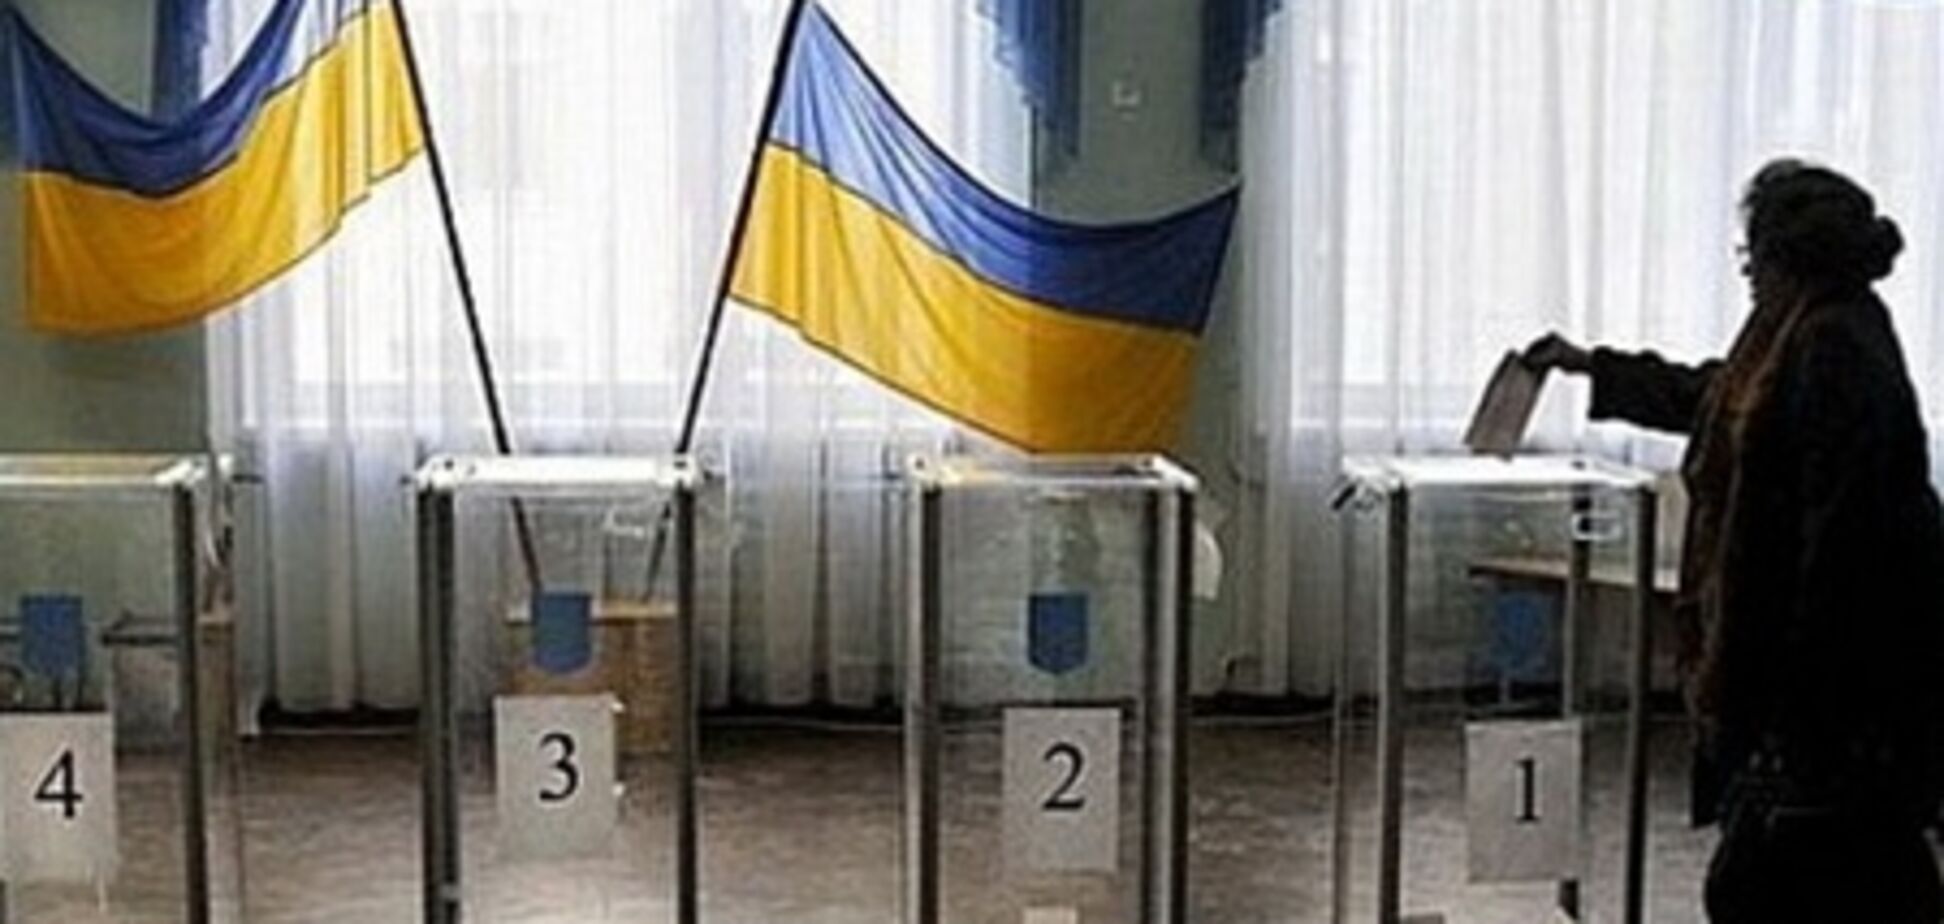 Під Луганськом розгромили виборчу дільницю: бюлетені не постраждали